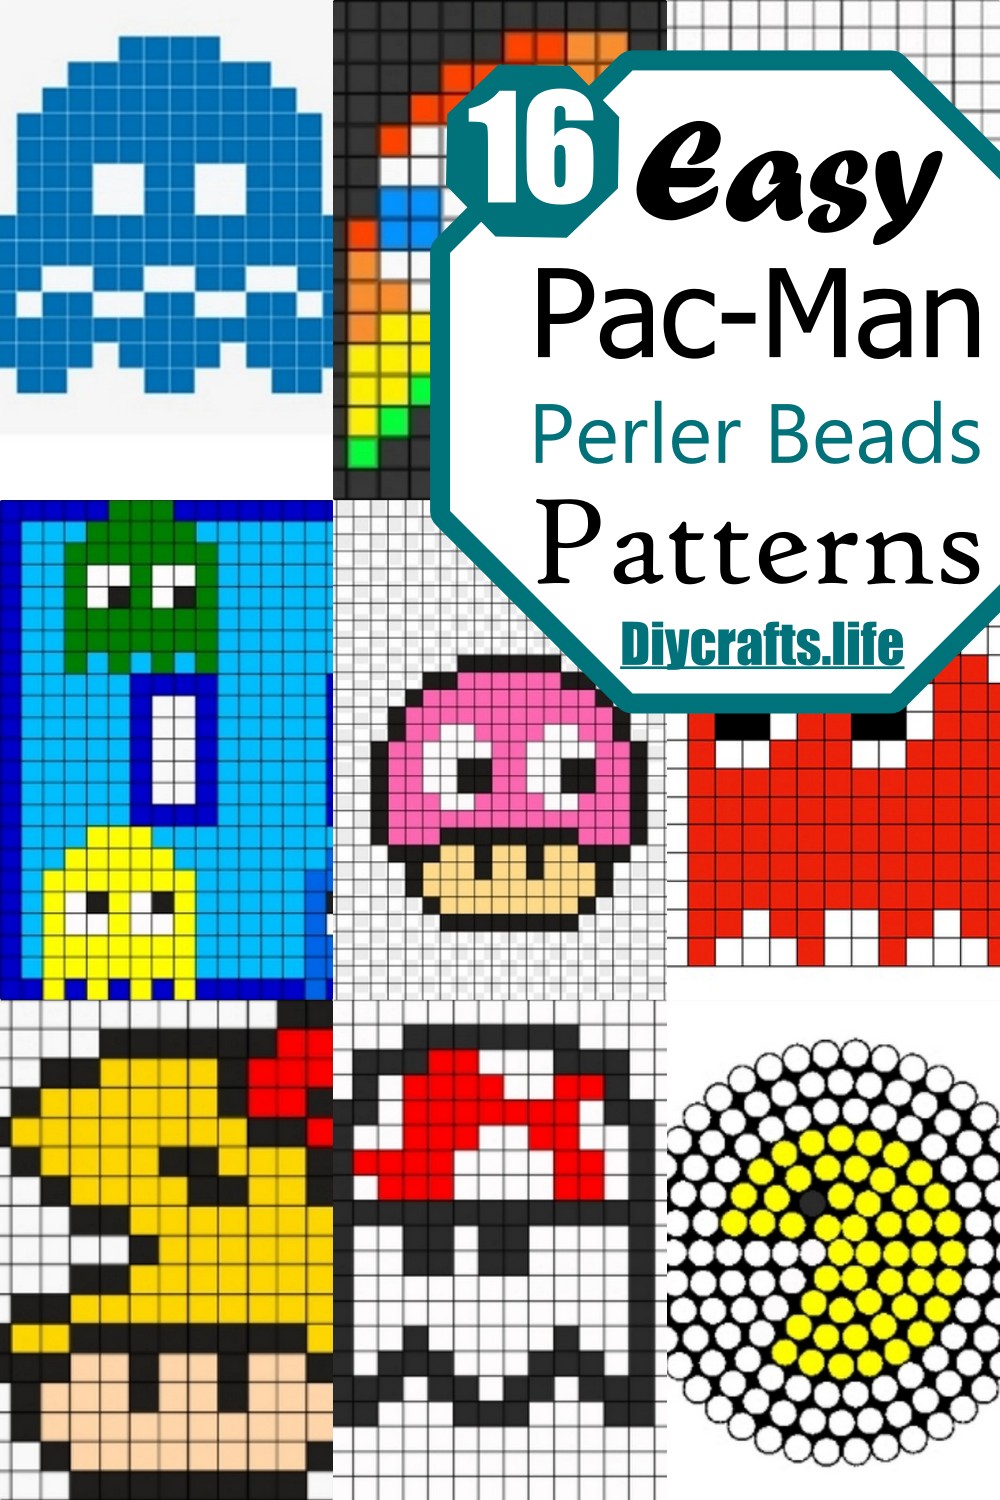 Easy Pac-Man Perler Beads Patterns